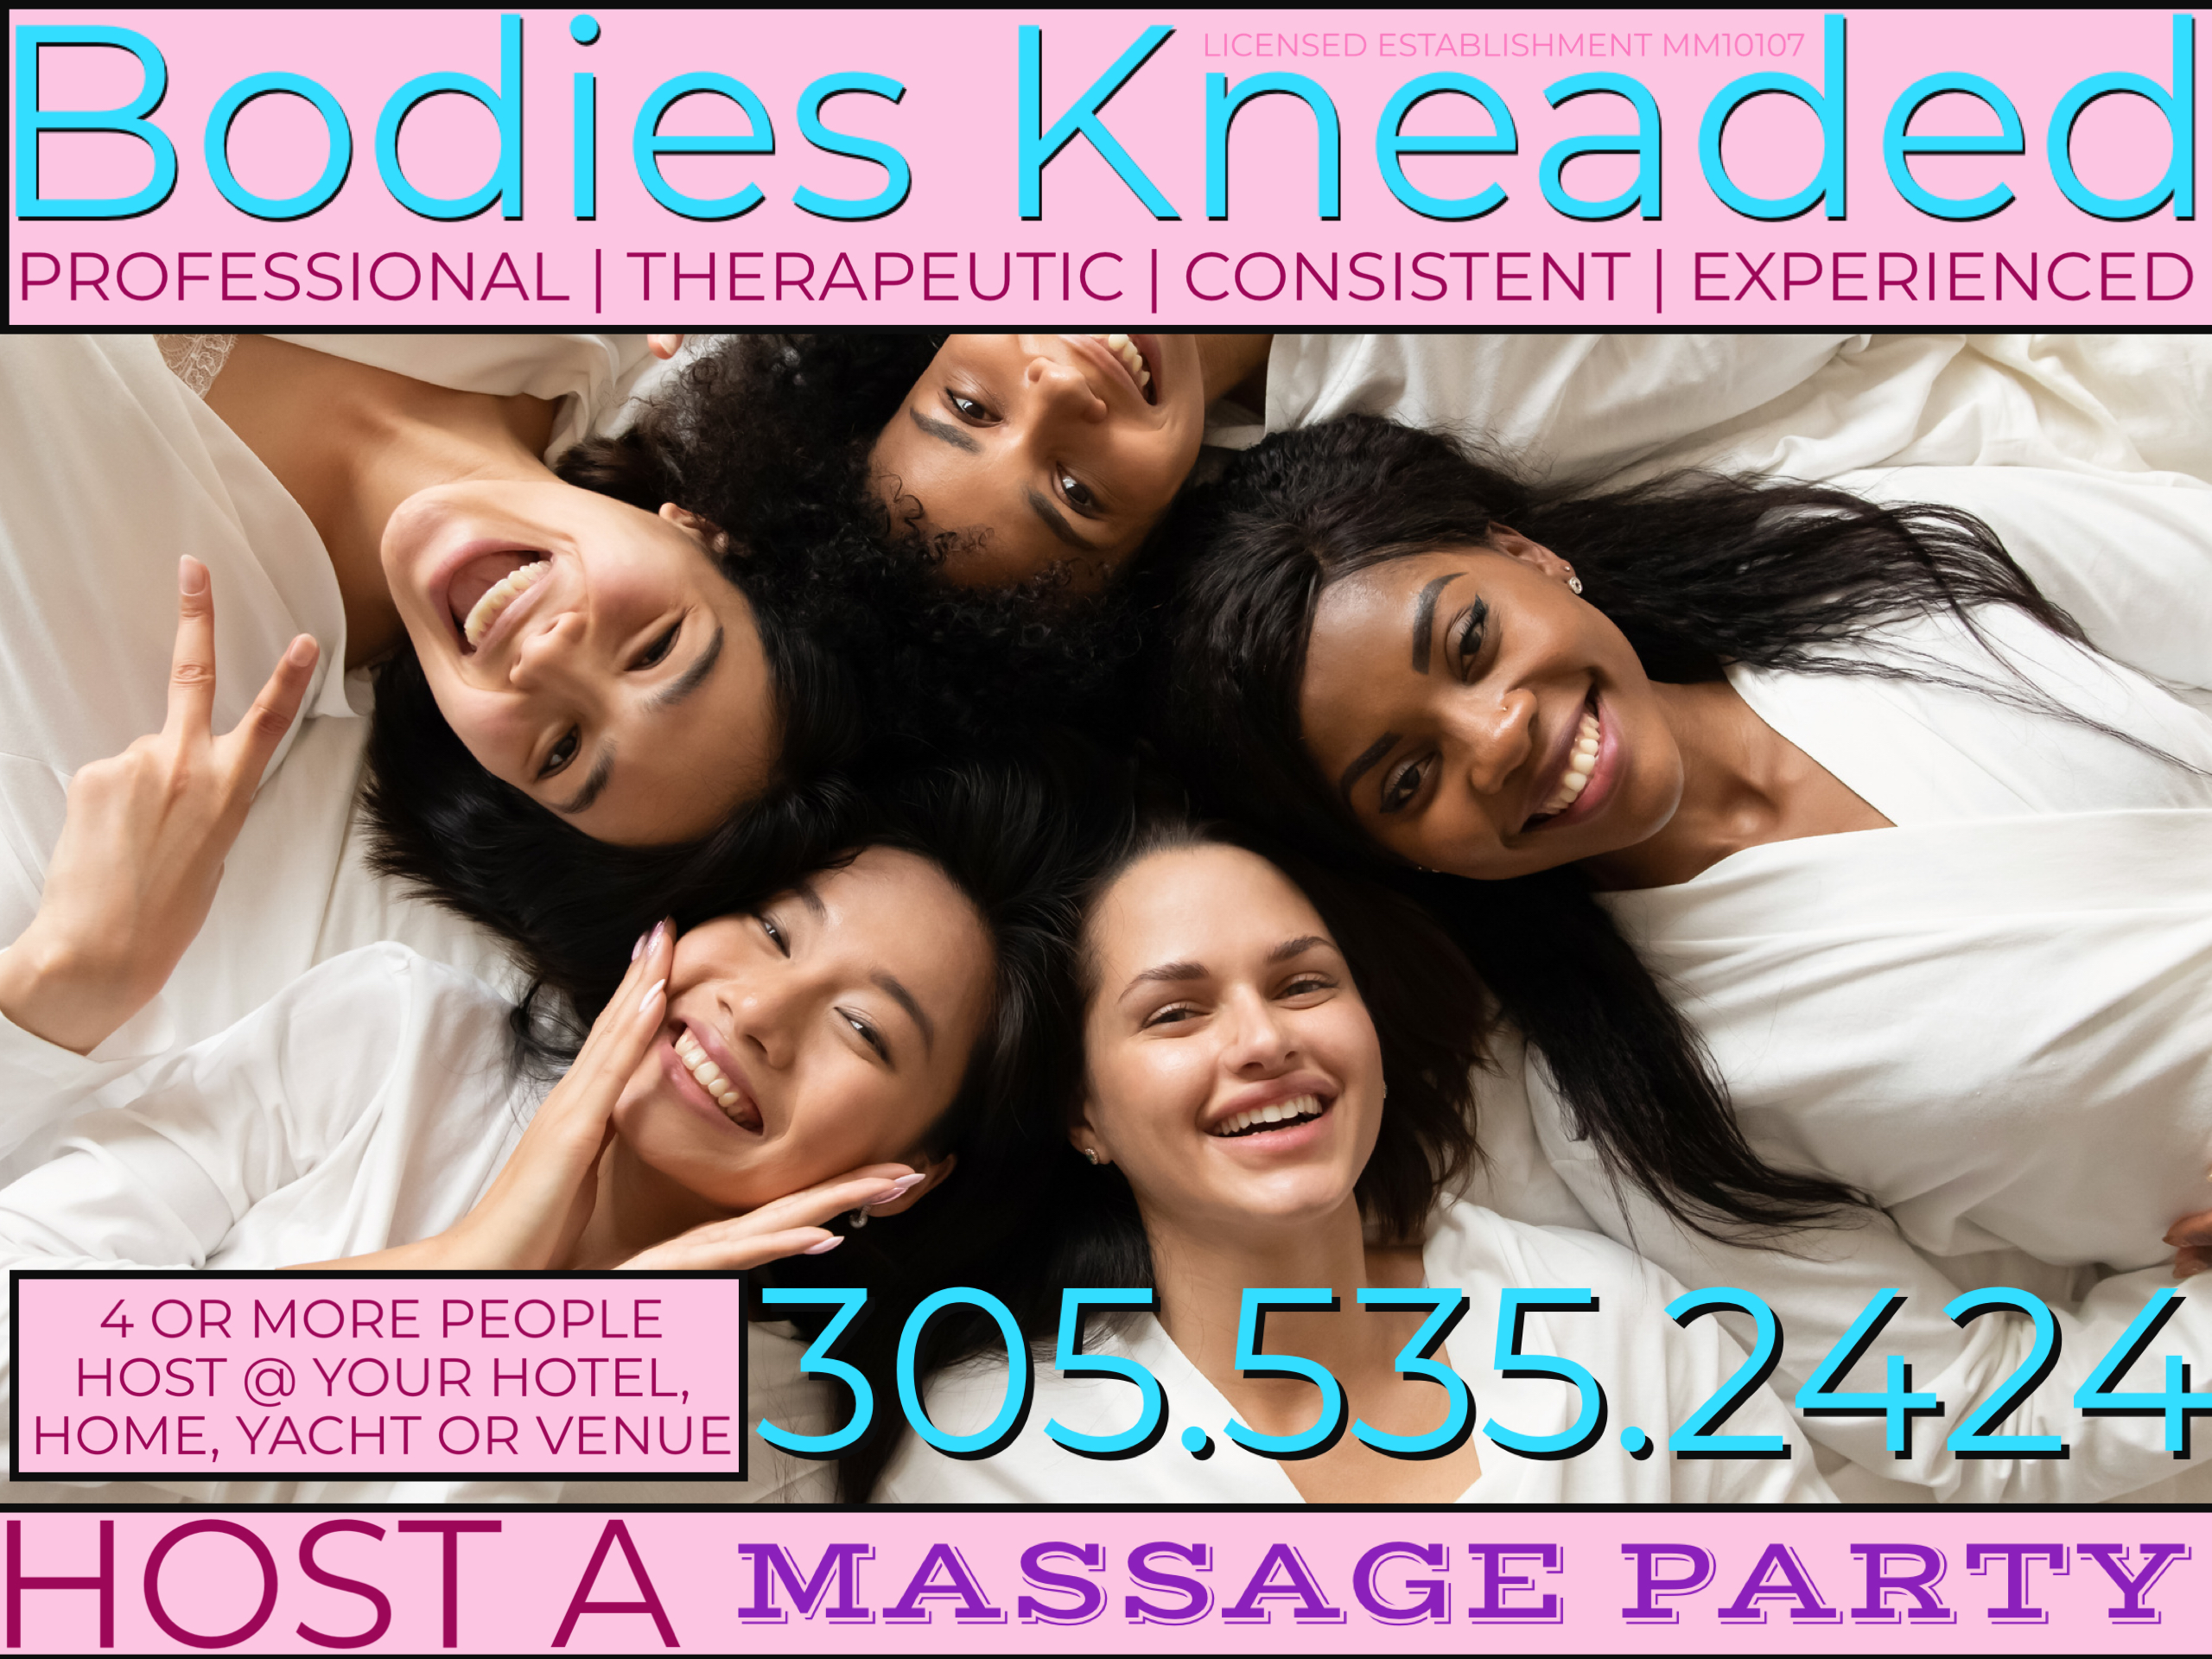 Massage Parties @ Bodies Kneaded Massage Spa South Beach Miami Since 1996 www.BodiesKneaded.com 305.535.2424